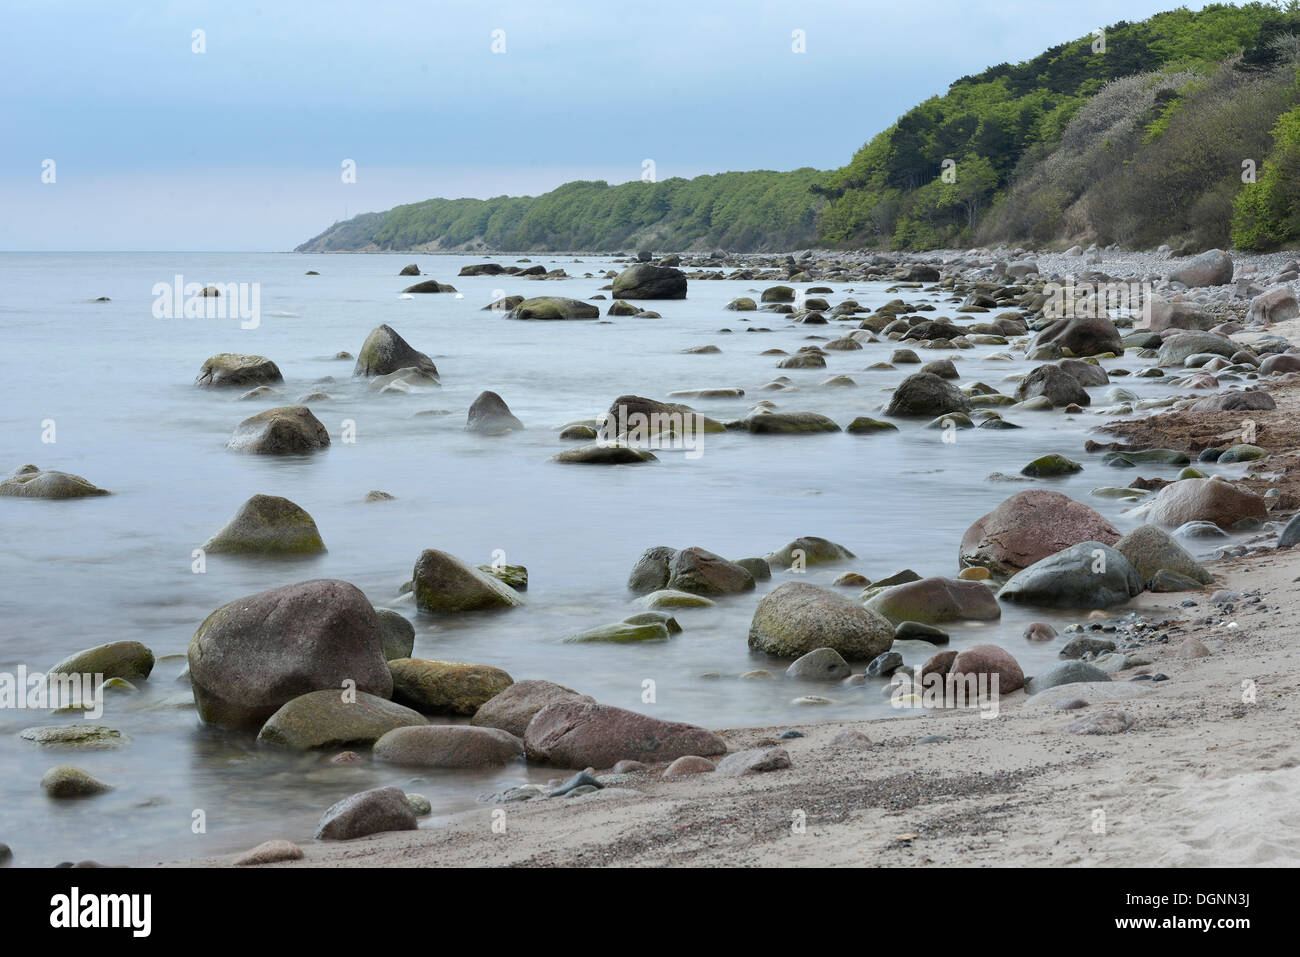 Scogliere sulla costa del Mar Baltico, pietre e rocce nel mare, Dranske, Meclemburgo-Pomerania Occidentale, Germania Foto Stock